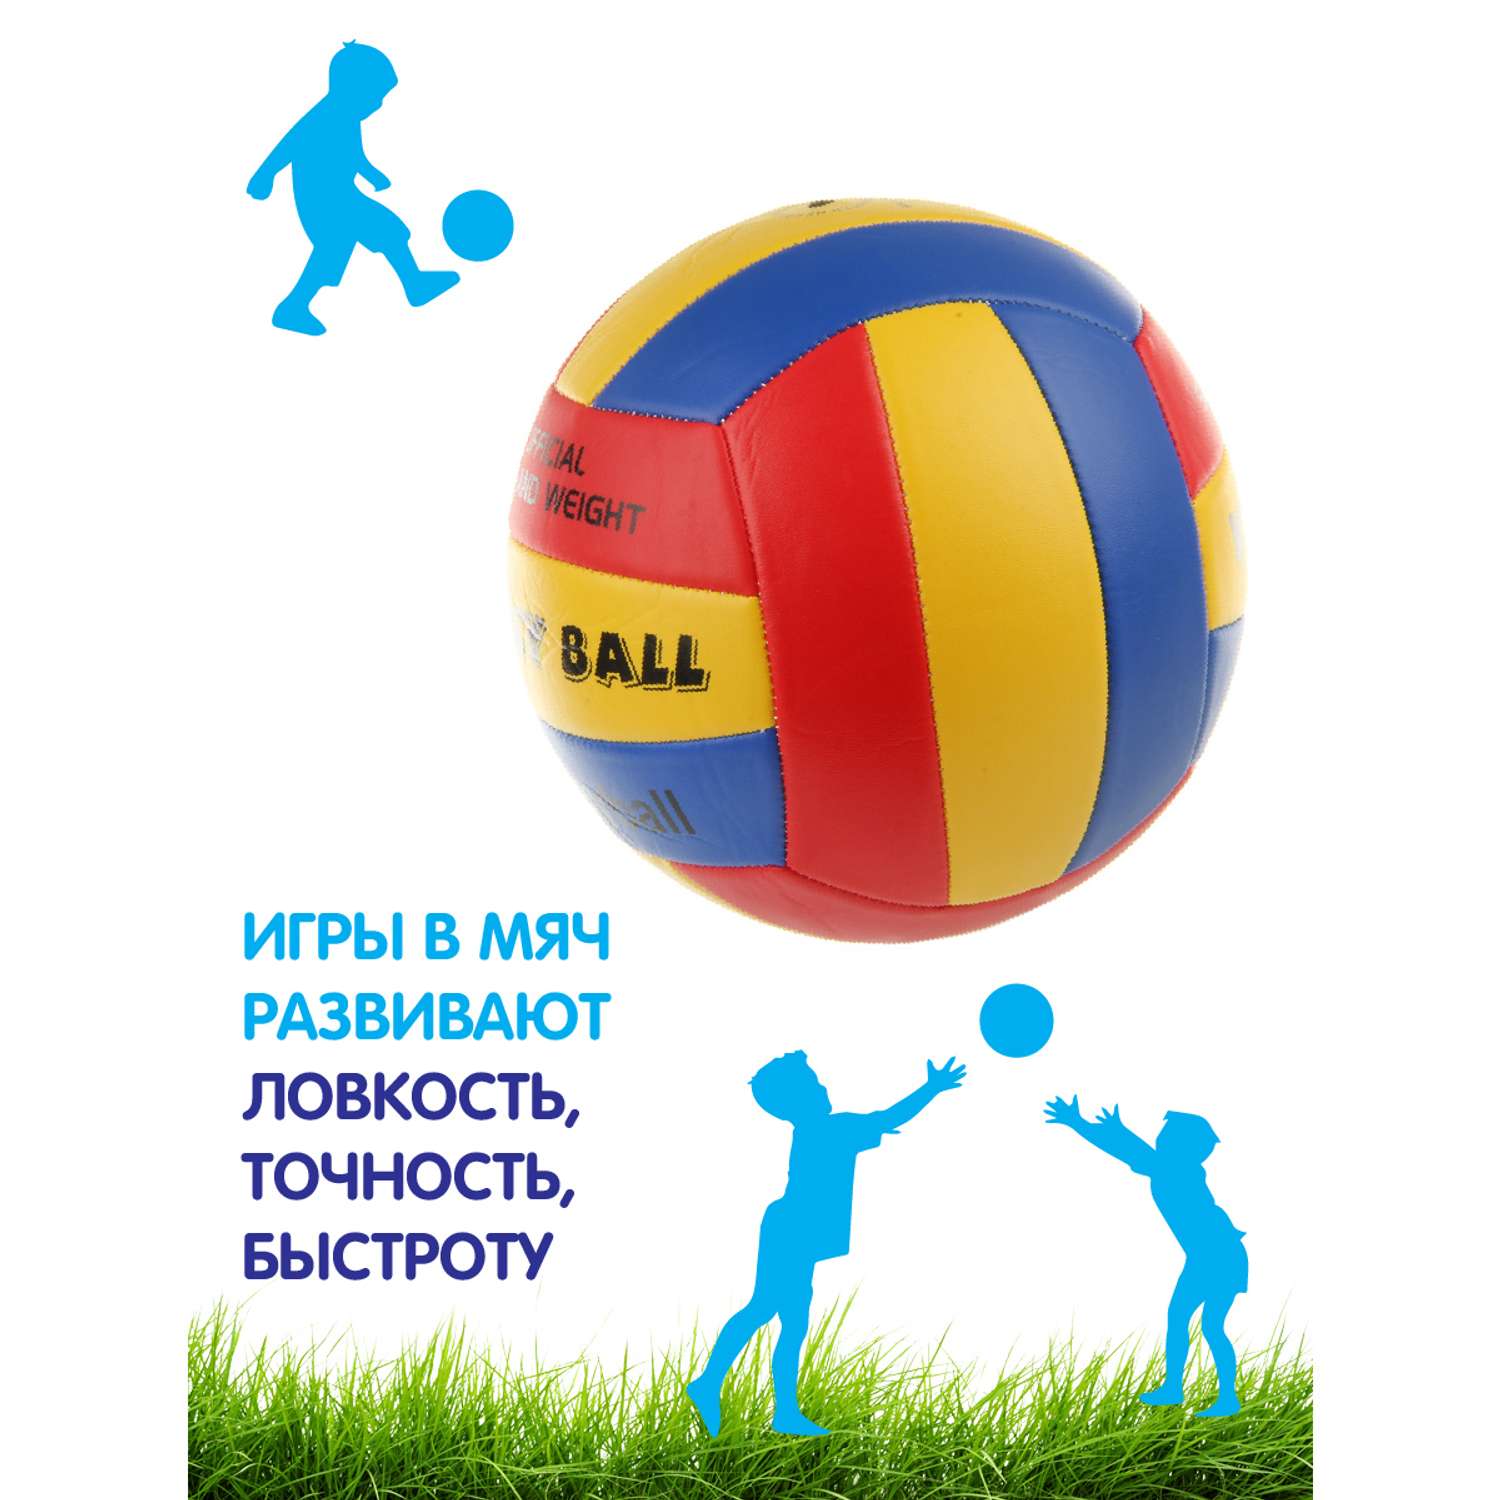 Мяч Veld Co волейбольный 21 см. - фото 3